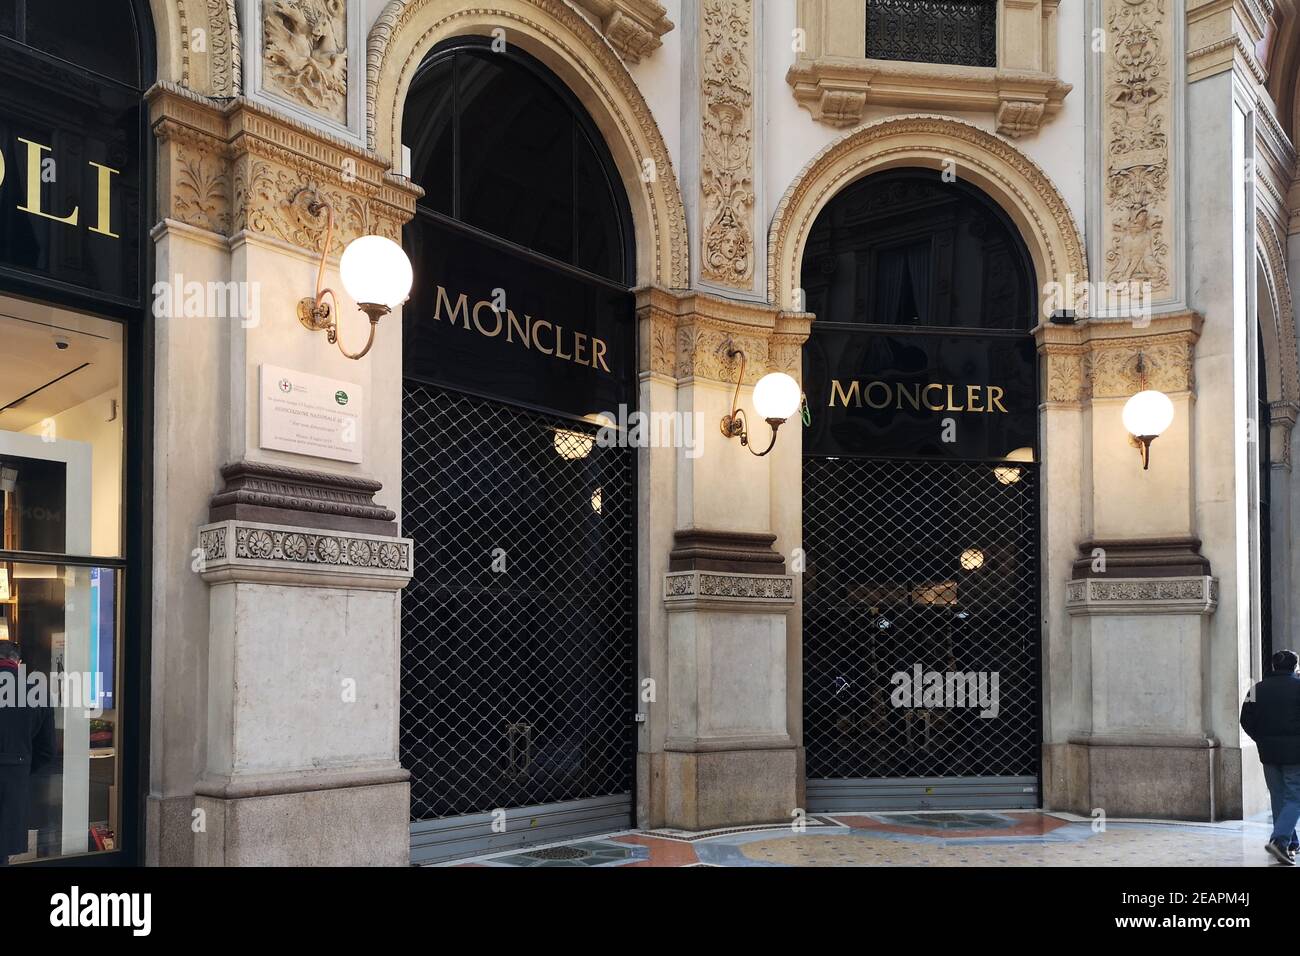 Chiuso Moncler store in Galleria Vittorio Emanuele II, Milano, Italia.  L'industria della moda soffre a causa di covidi restrizioni alla  circolazione in Italia Foto stock - Alamy